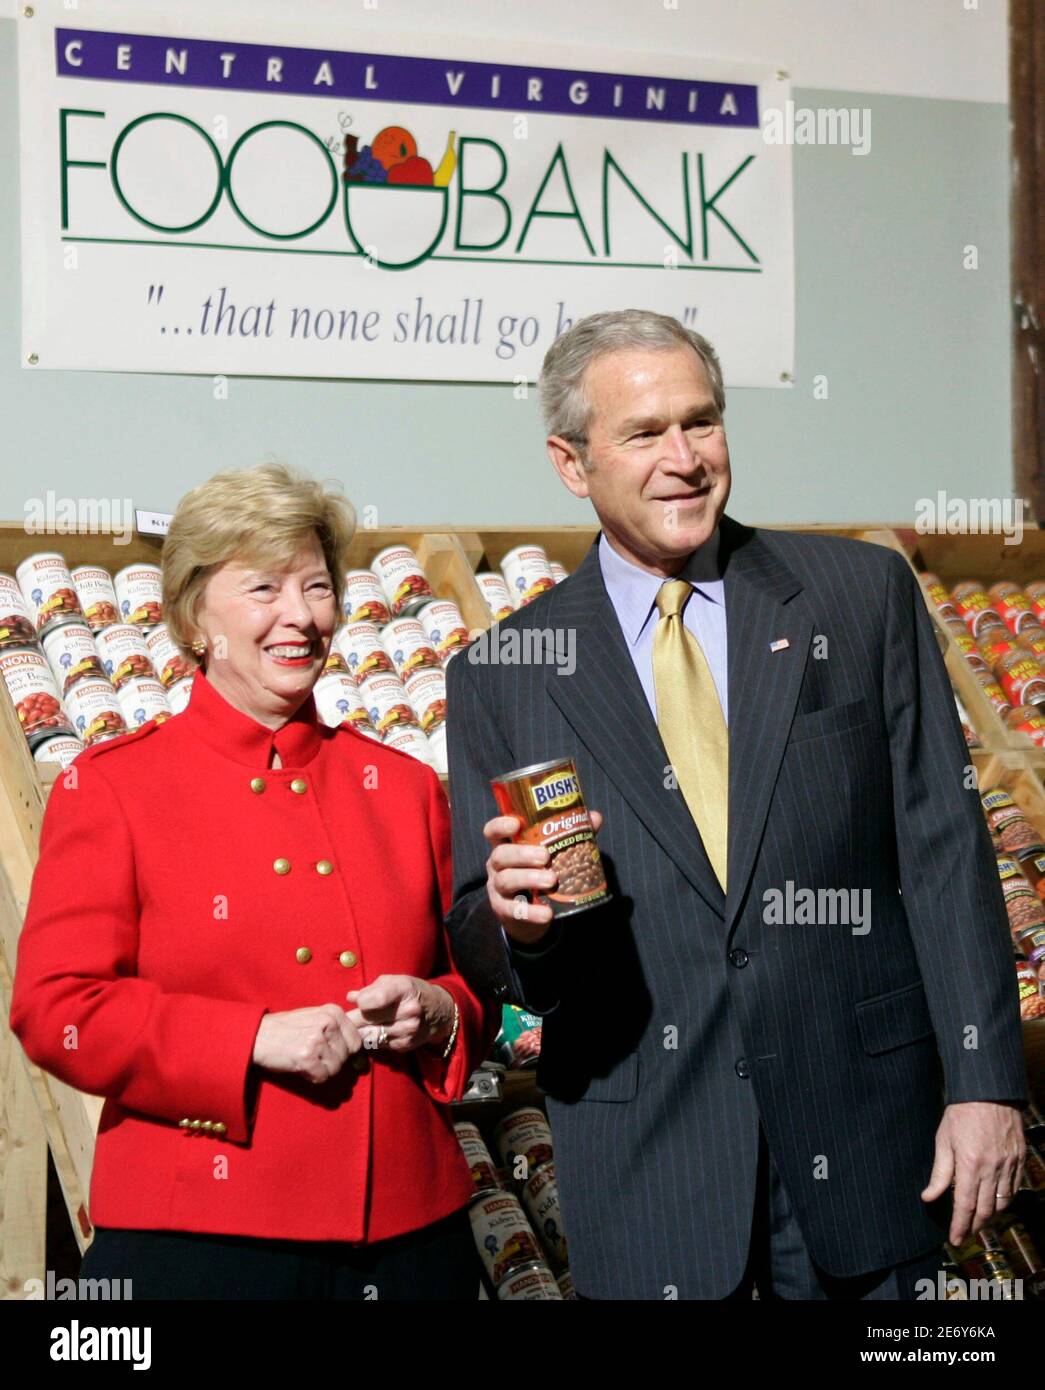 U.S. President George W. Bush (R) hält eine Dose Bushs Bohnen neben Faye Lohr, CEO der zentralen Virginia Foodbank gebacken, da er das Werk in Richmond, VA, 19. November 2007 tourt. Bush reiste nach Virginia für Ereignisse vor dem Thanksgiving-Feiertag.      REUTERS/Jason Reed (Vereinigte Staaten) Stockfoto